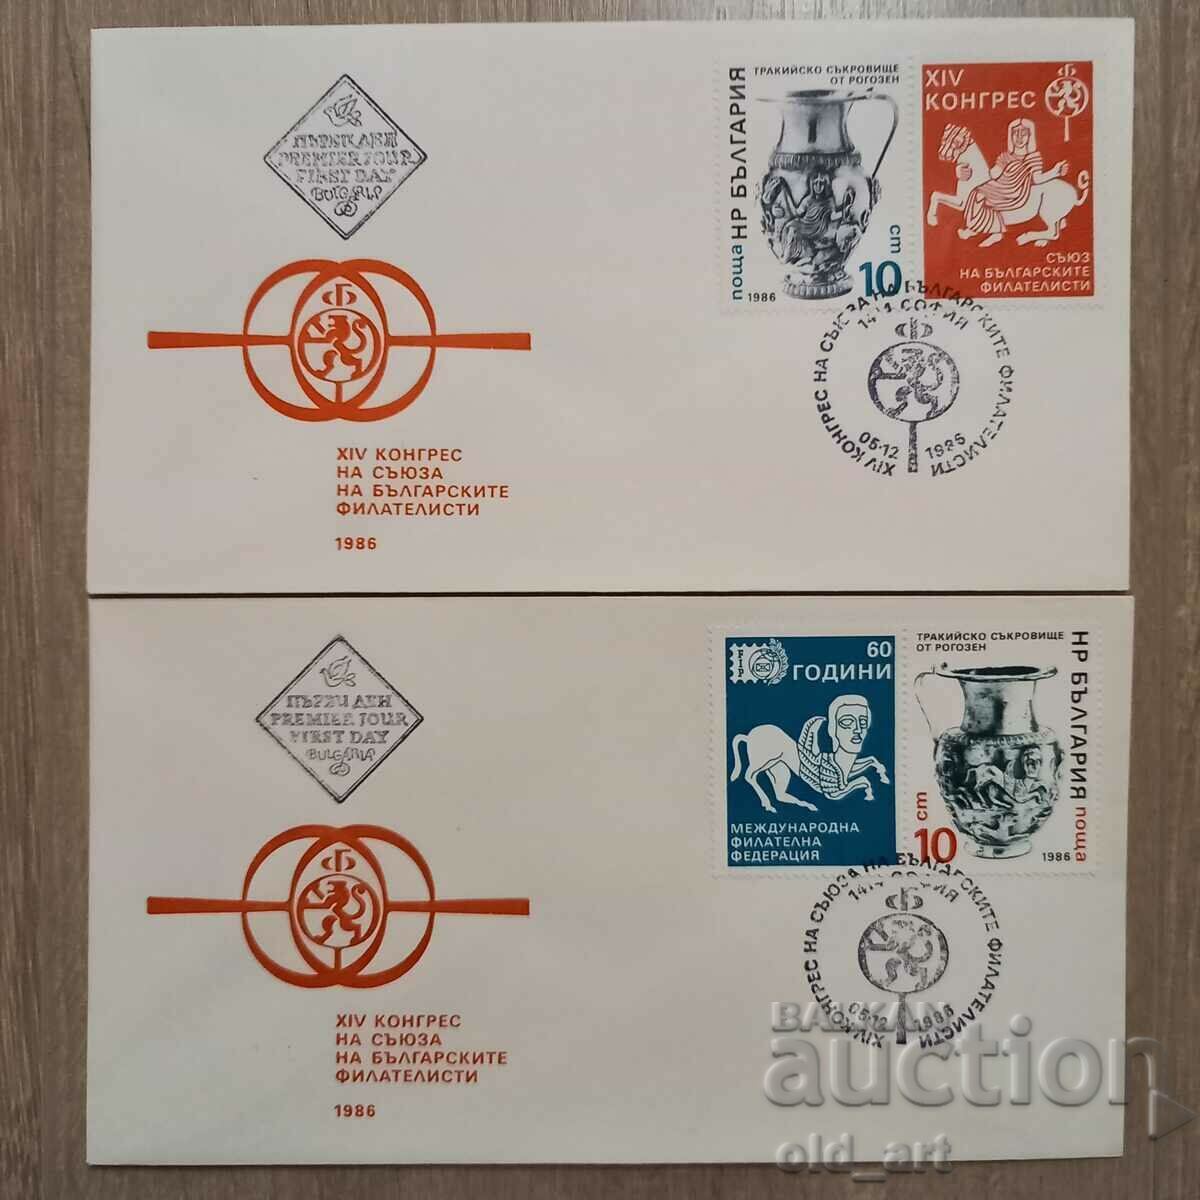 Plicuri poştale - XIV Congres al Uniunii Bulgarilor filateliști